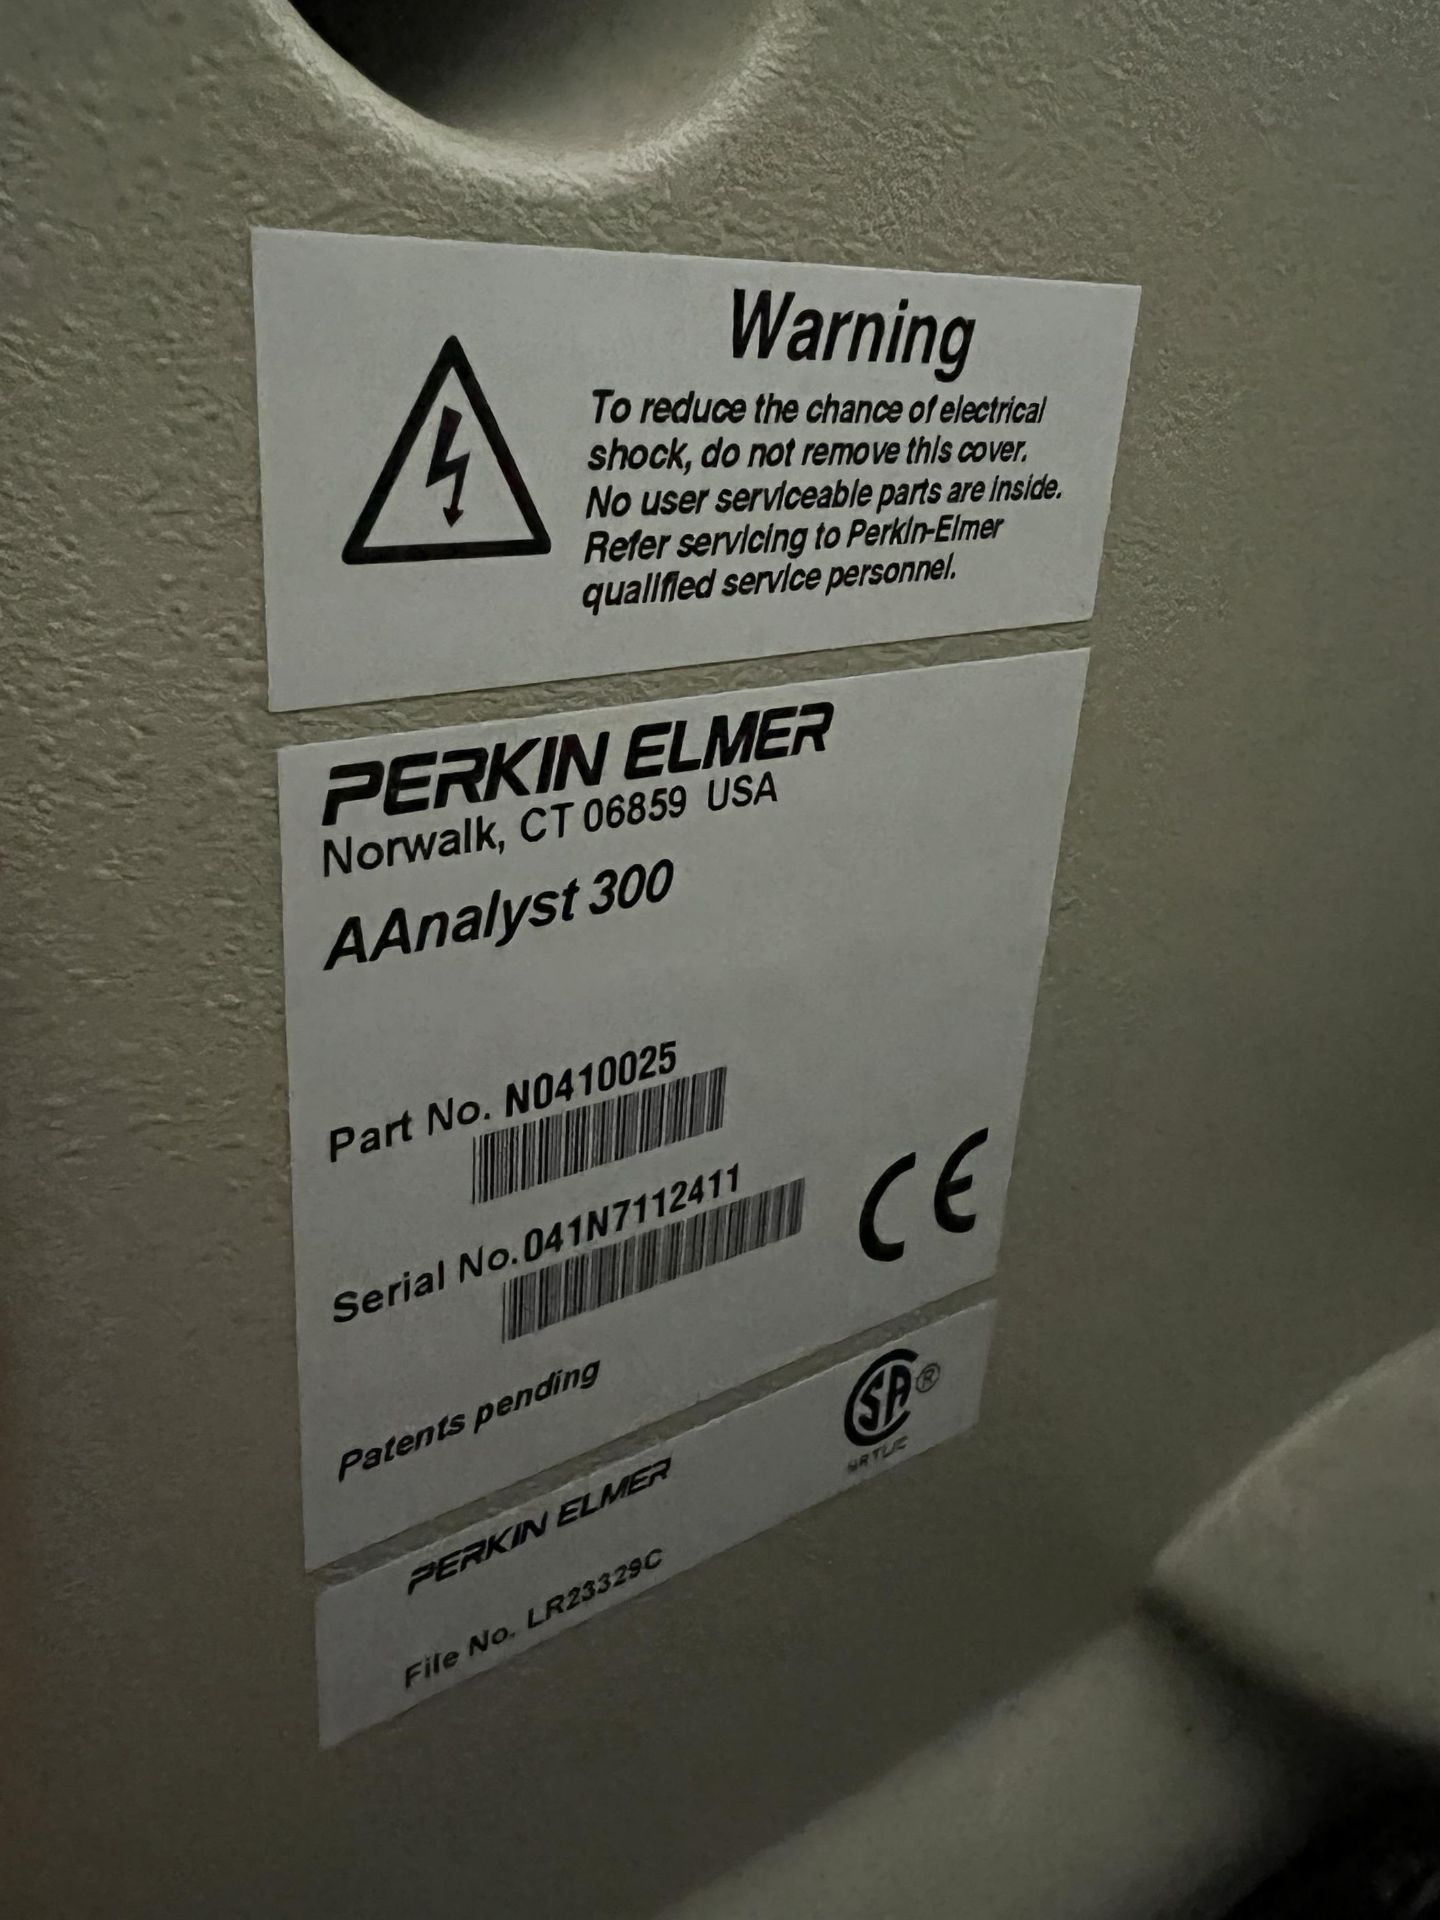 PERKIN-ELMER Aanalyst 300 Atomic Absorption Spectrometer, s/n 041N7112411 - Image 6 of 6